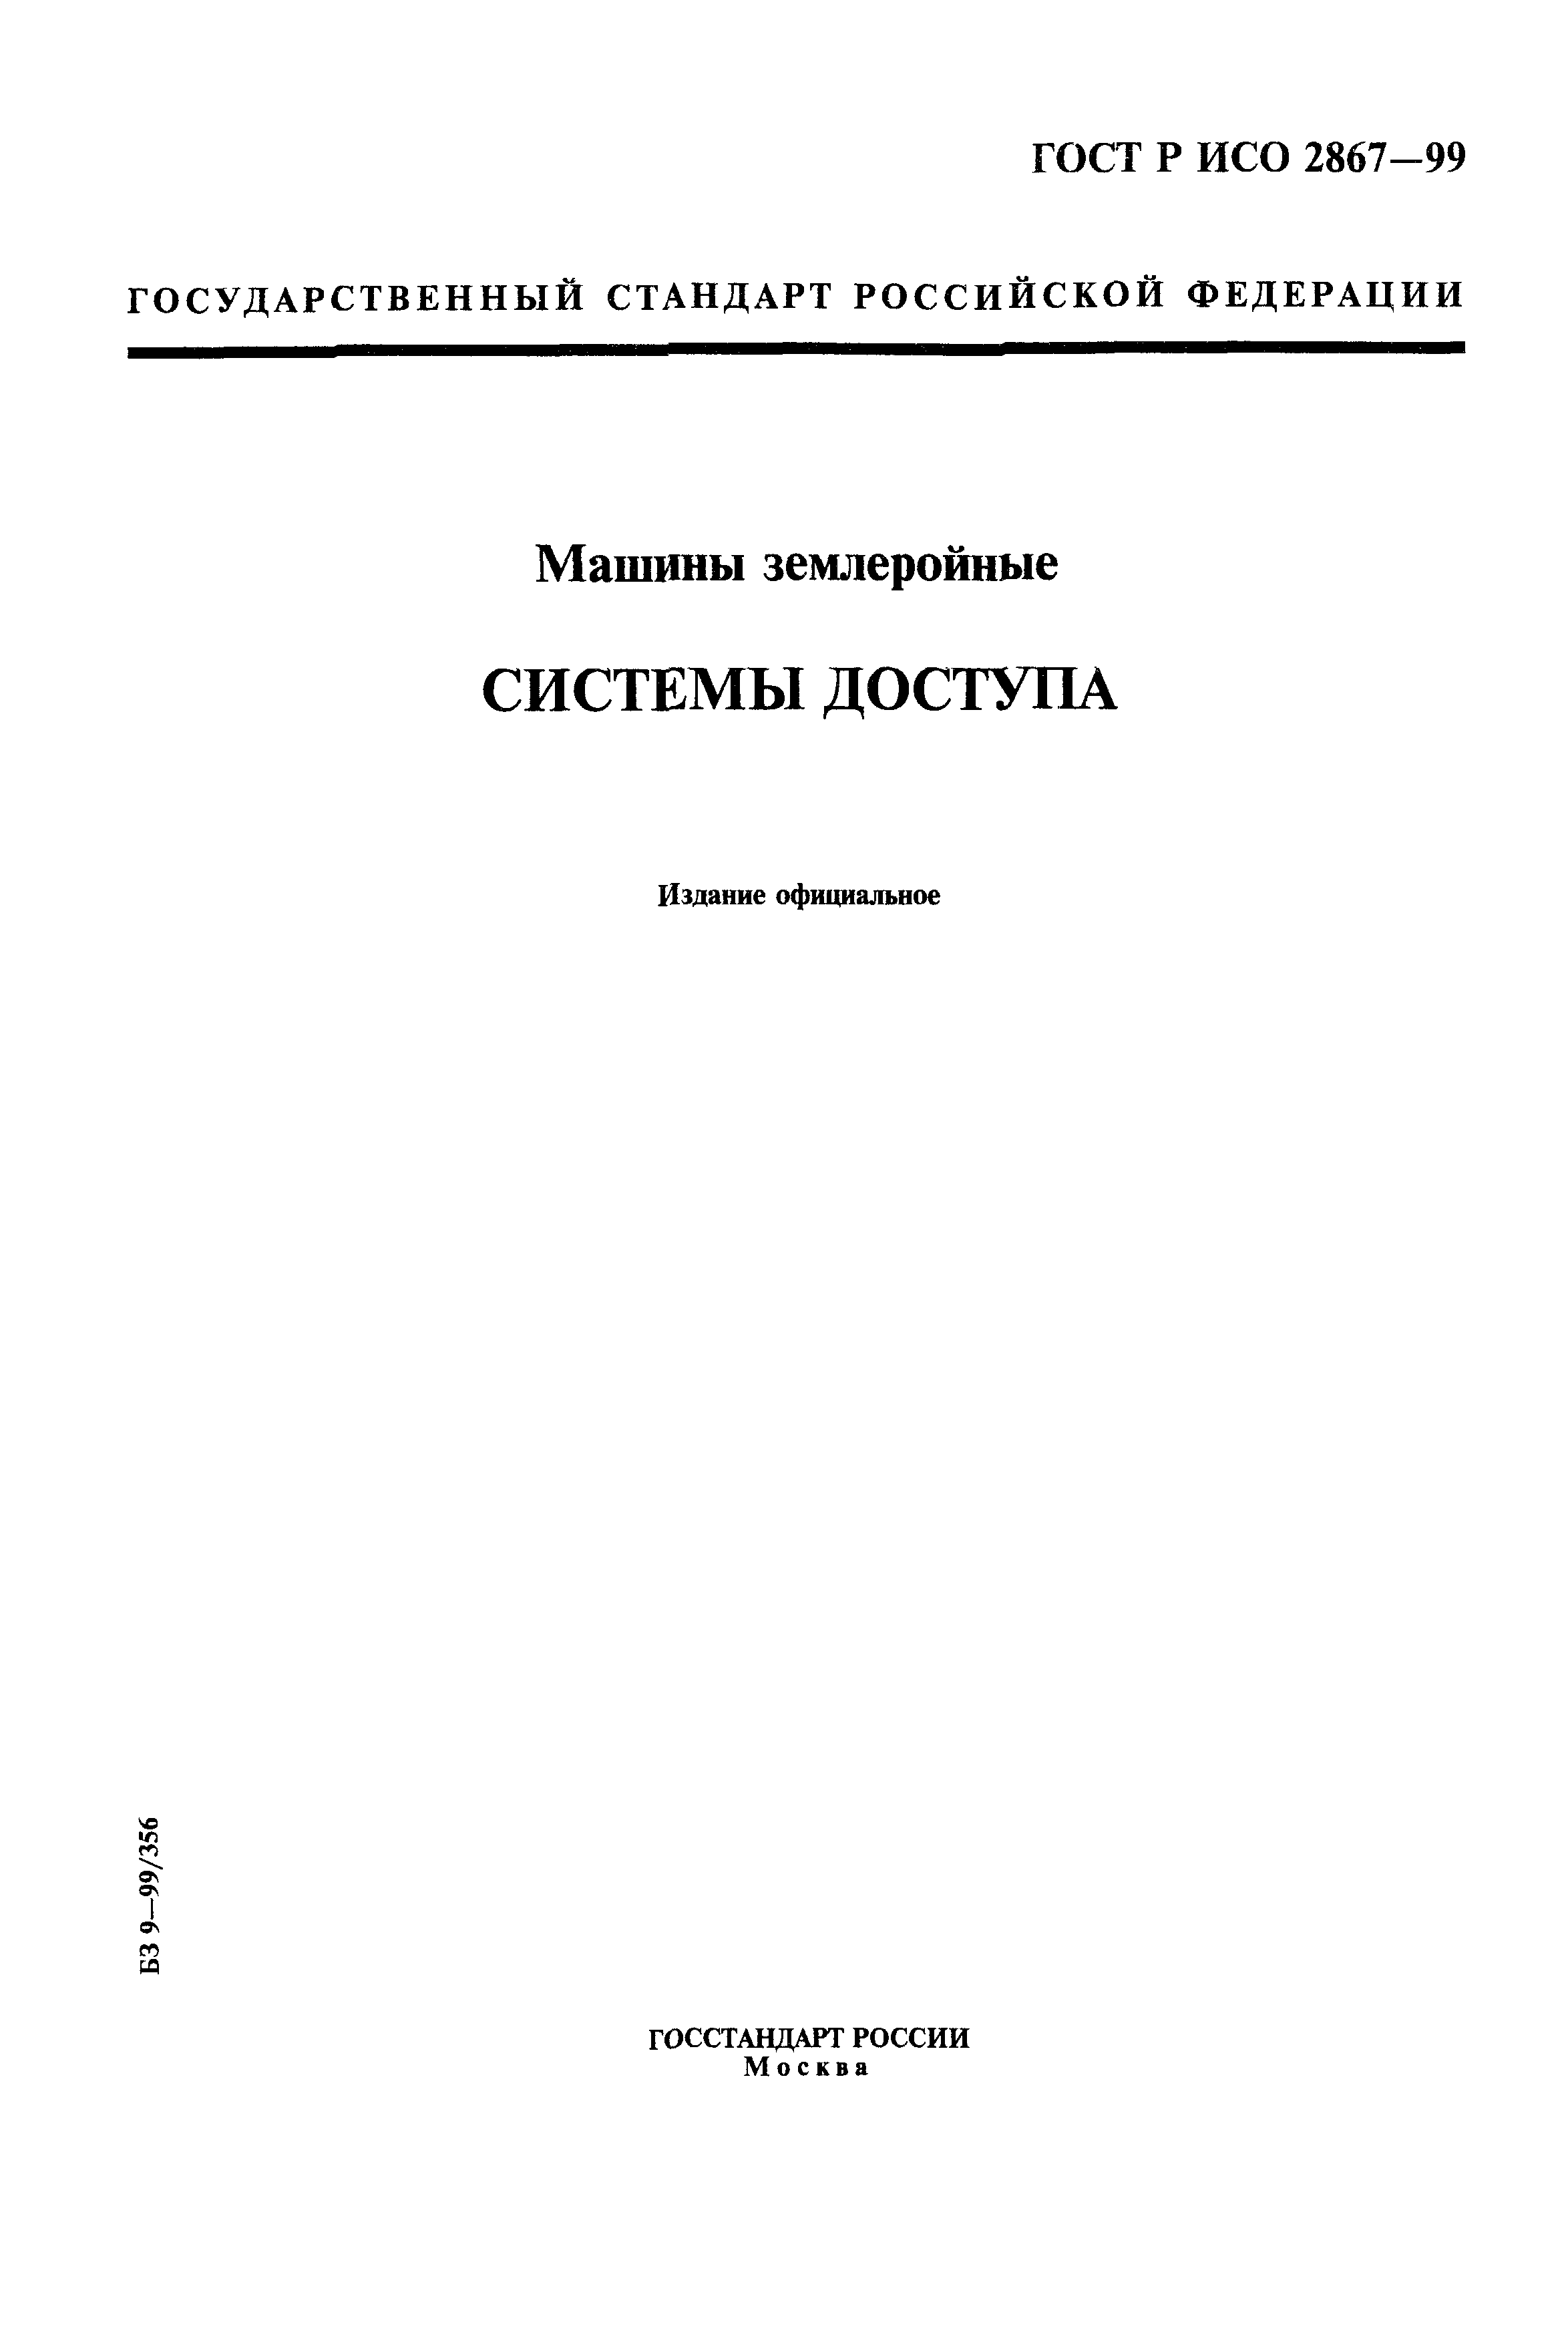 ГОСТ Р ИСО 2867-99